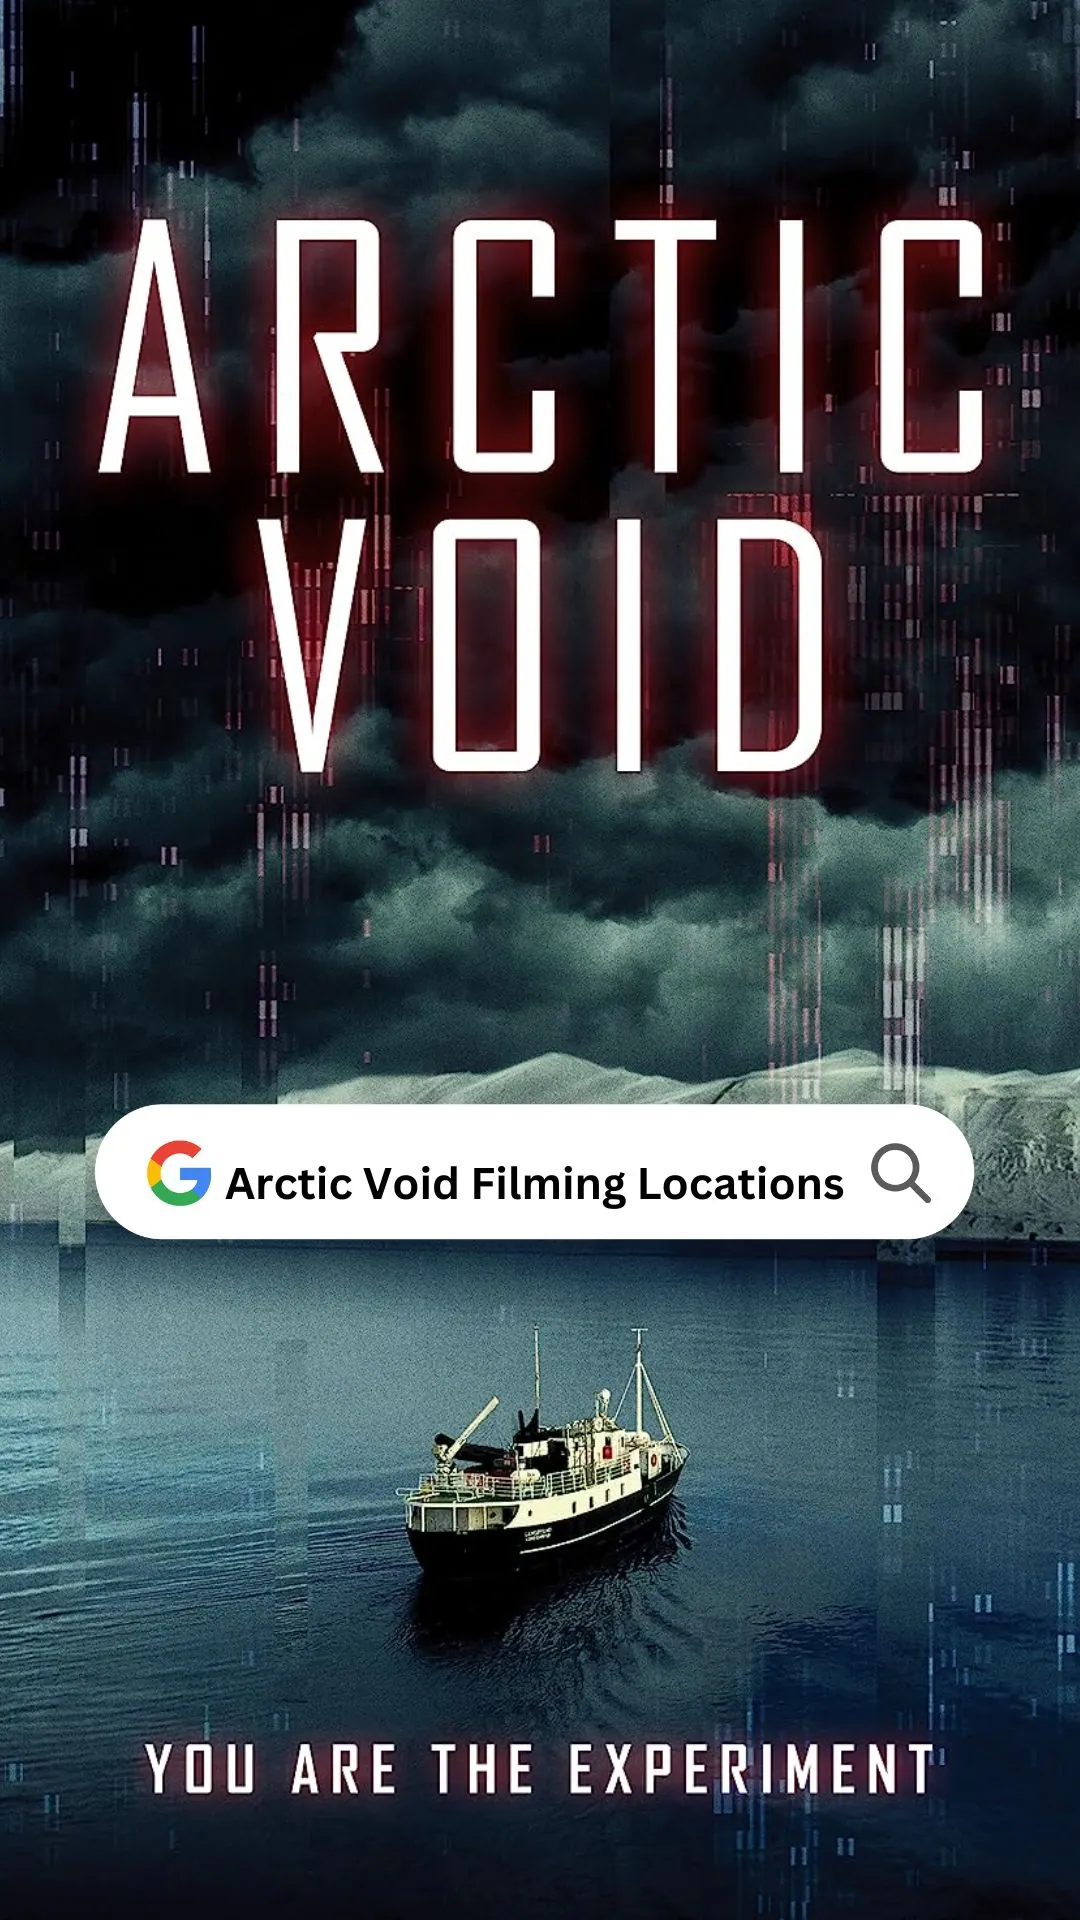 Arctic Void Filming Locations